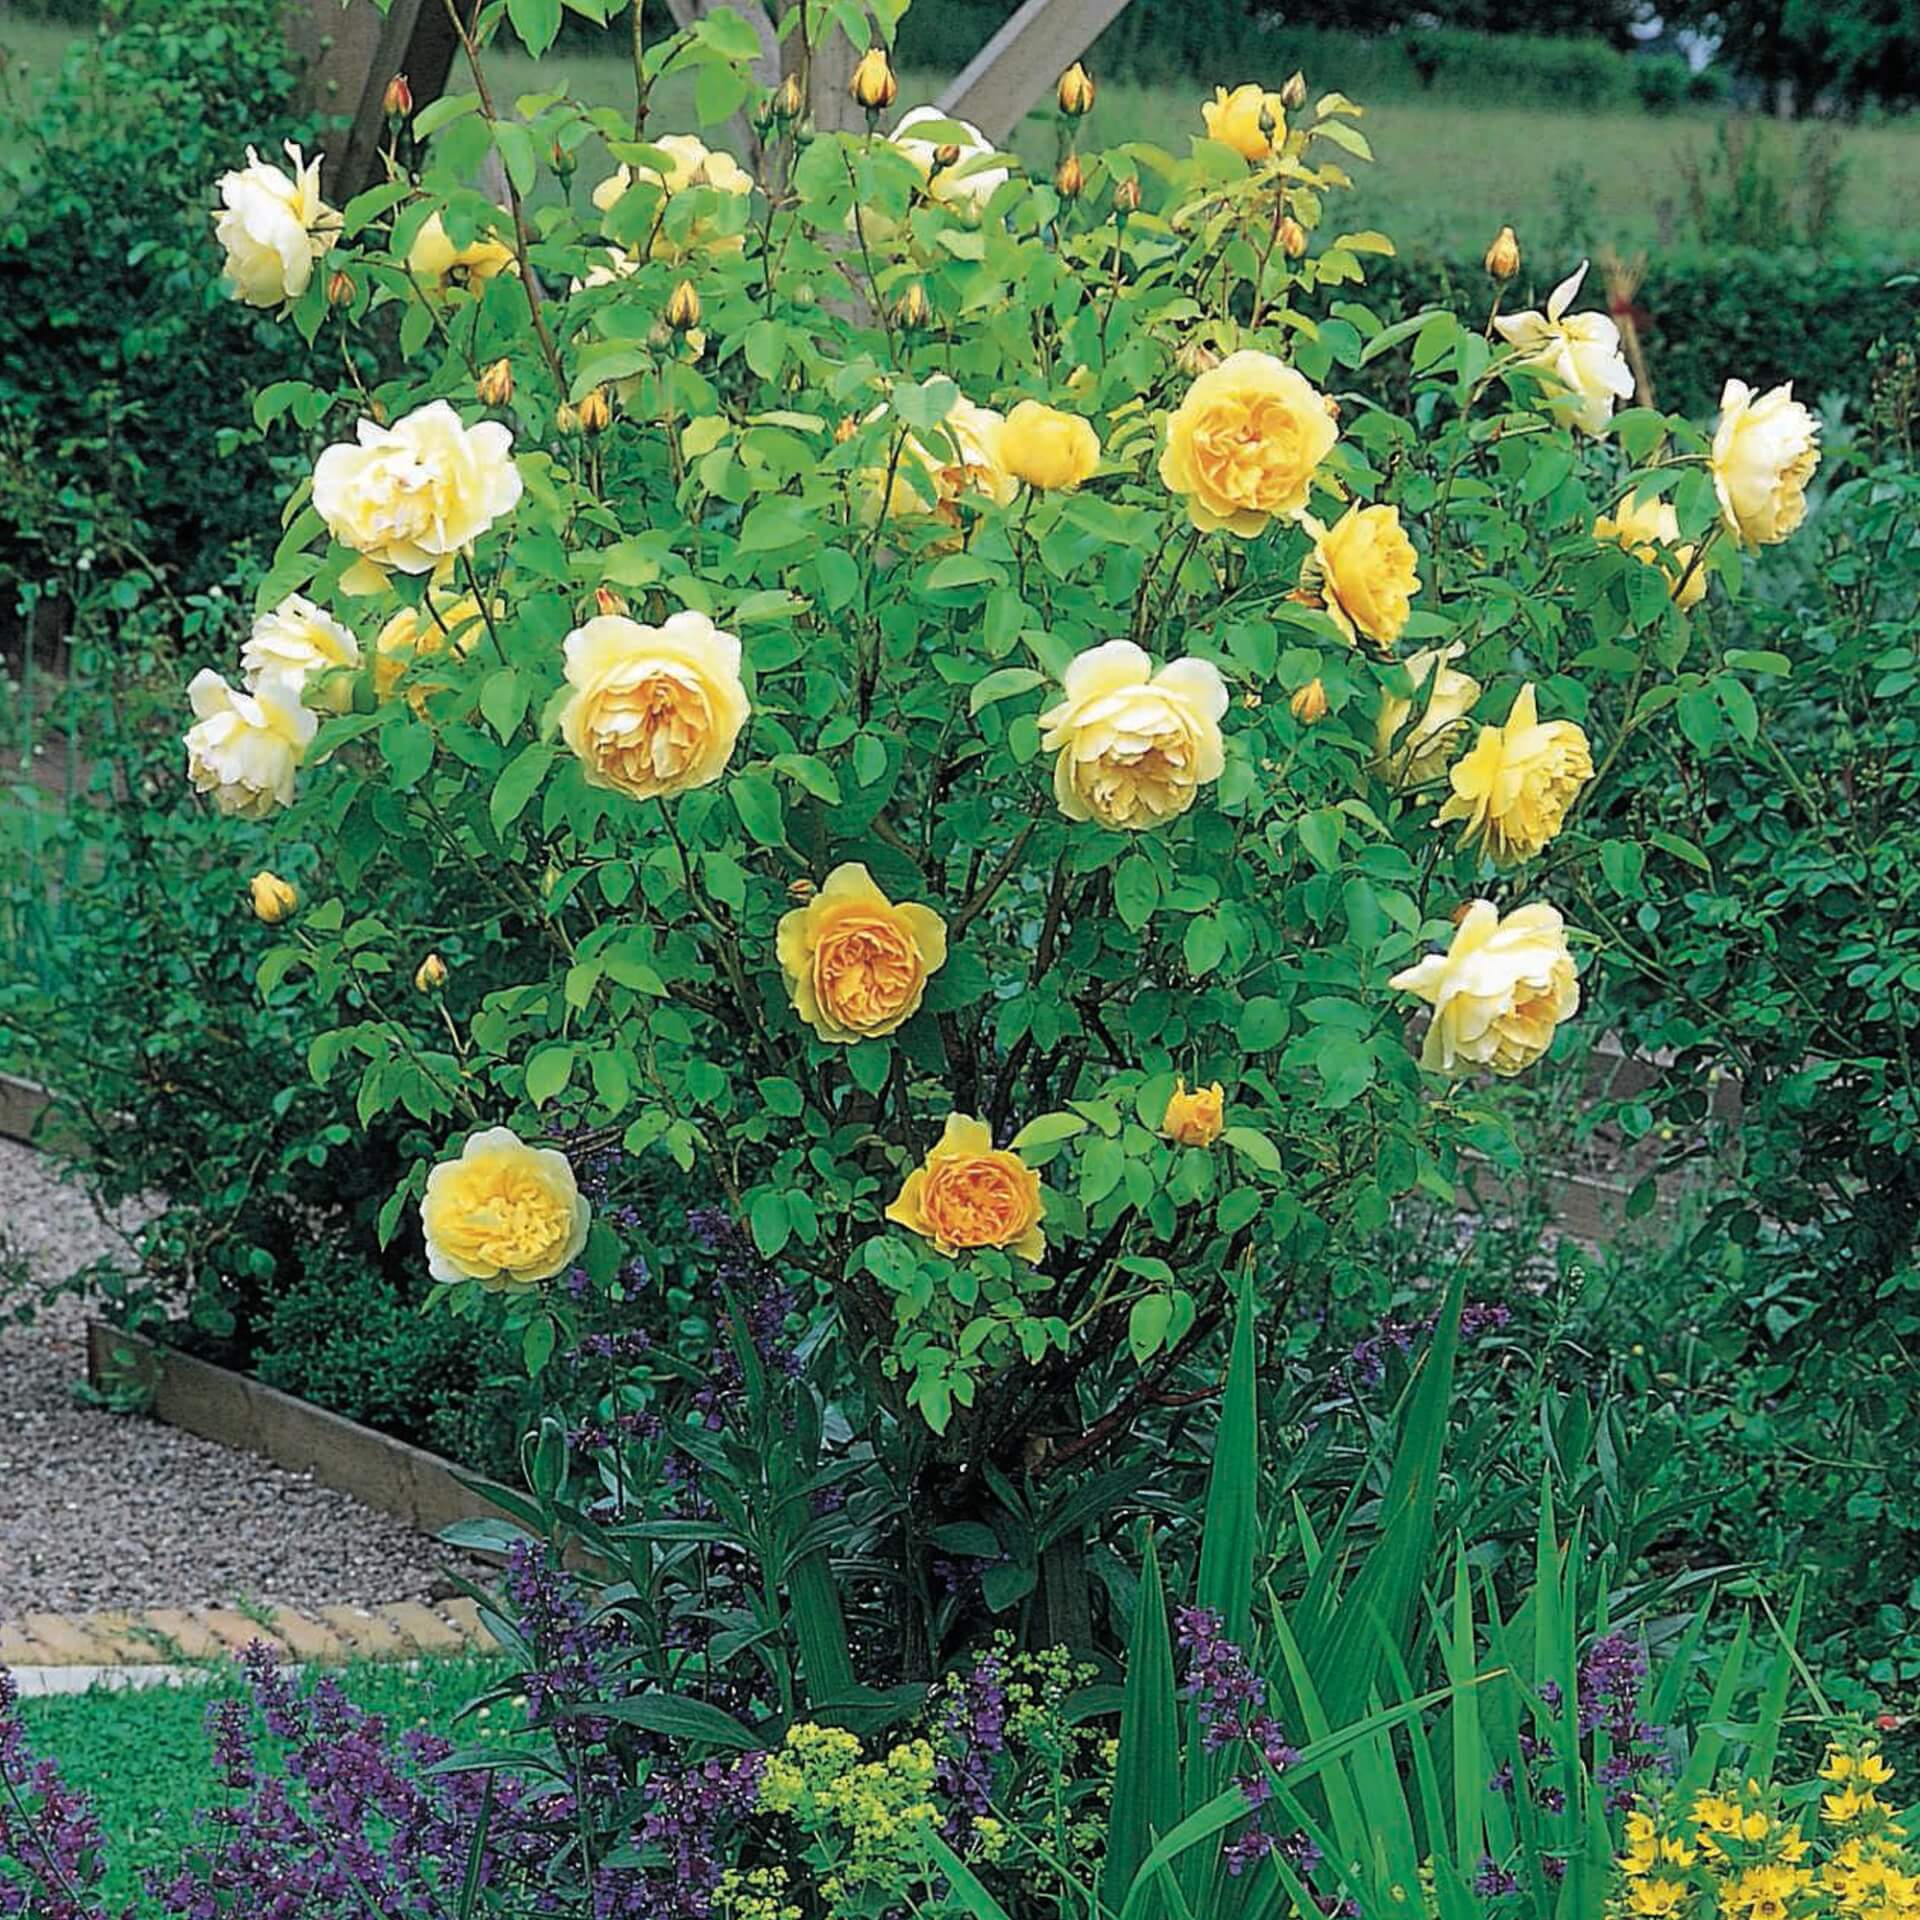 Роза английская грэхэм томас обрезка. благородная желтая роза graham thomas. защита от болезней и вредителей